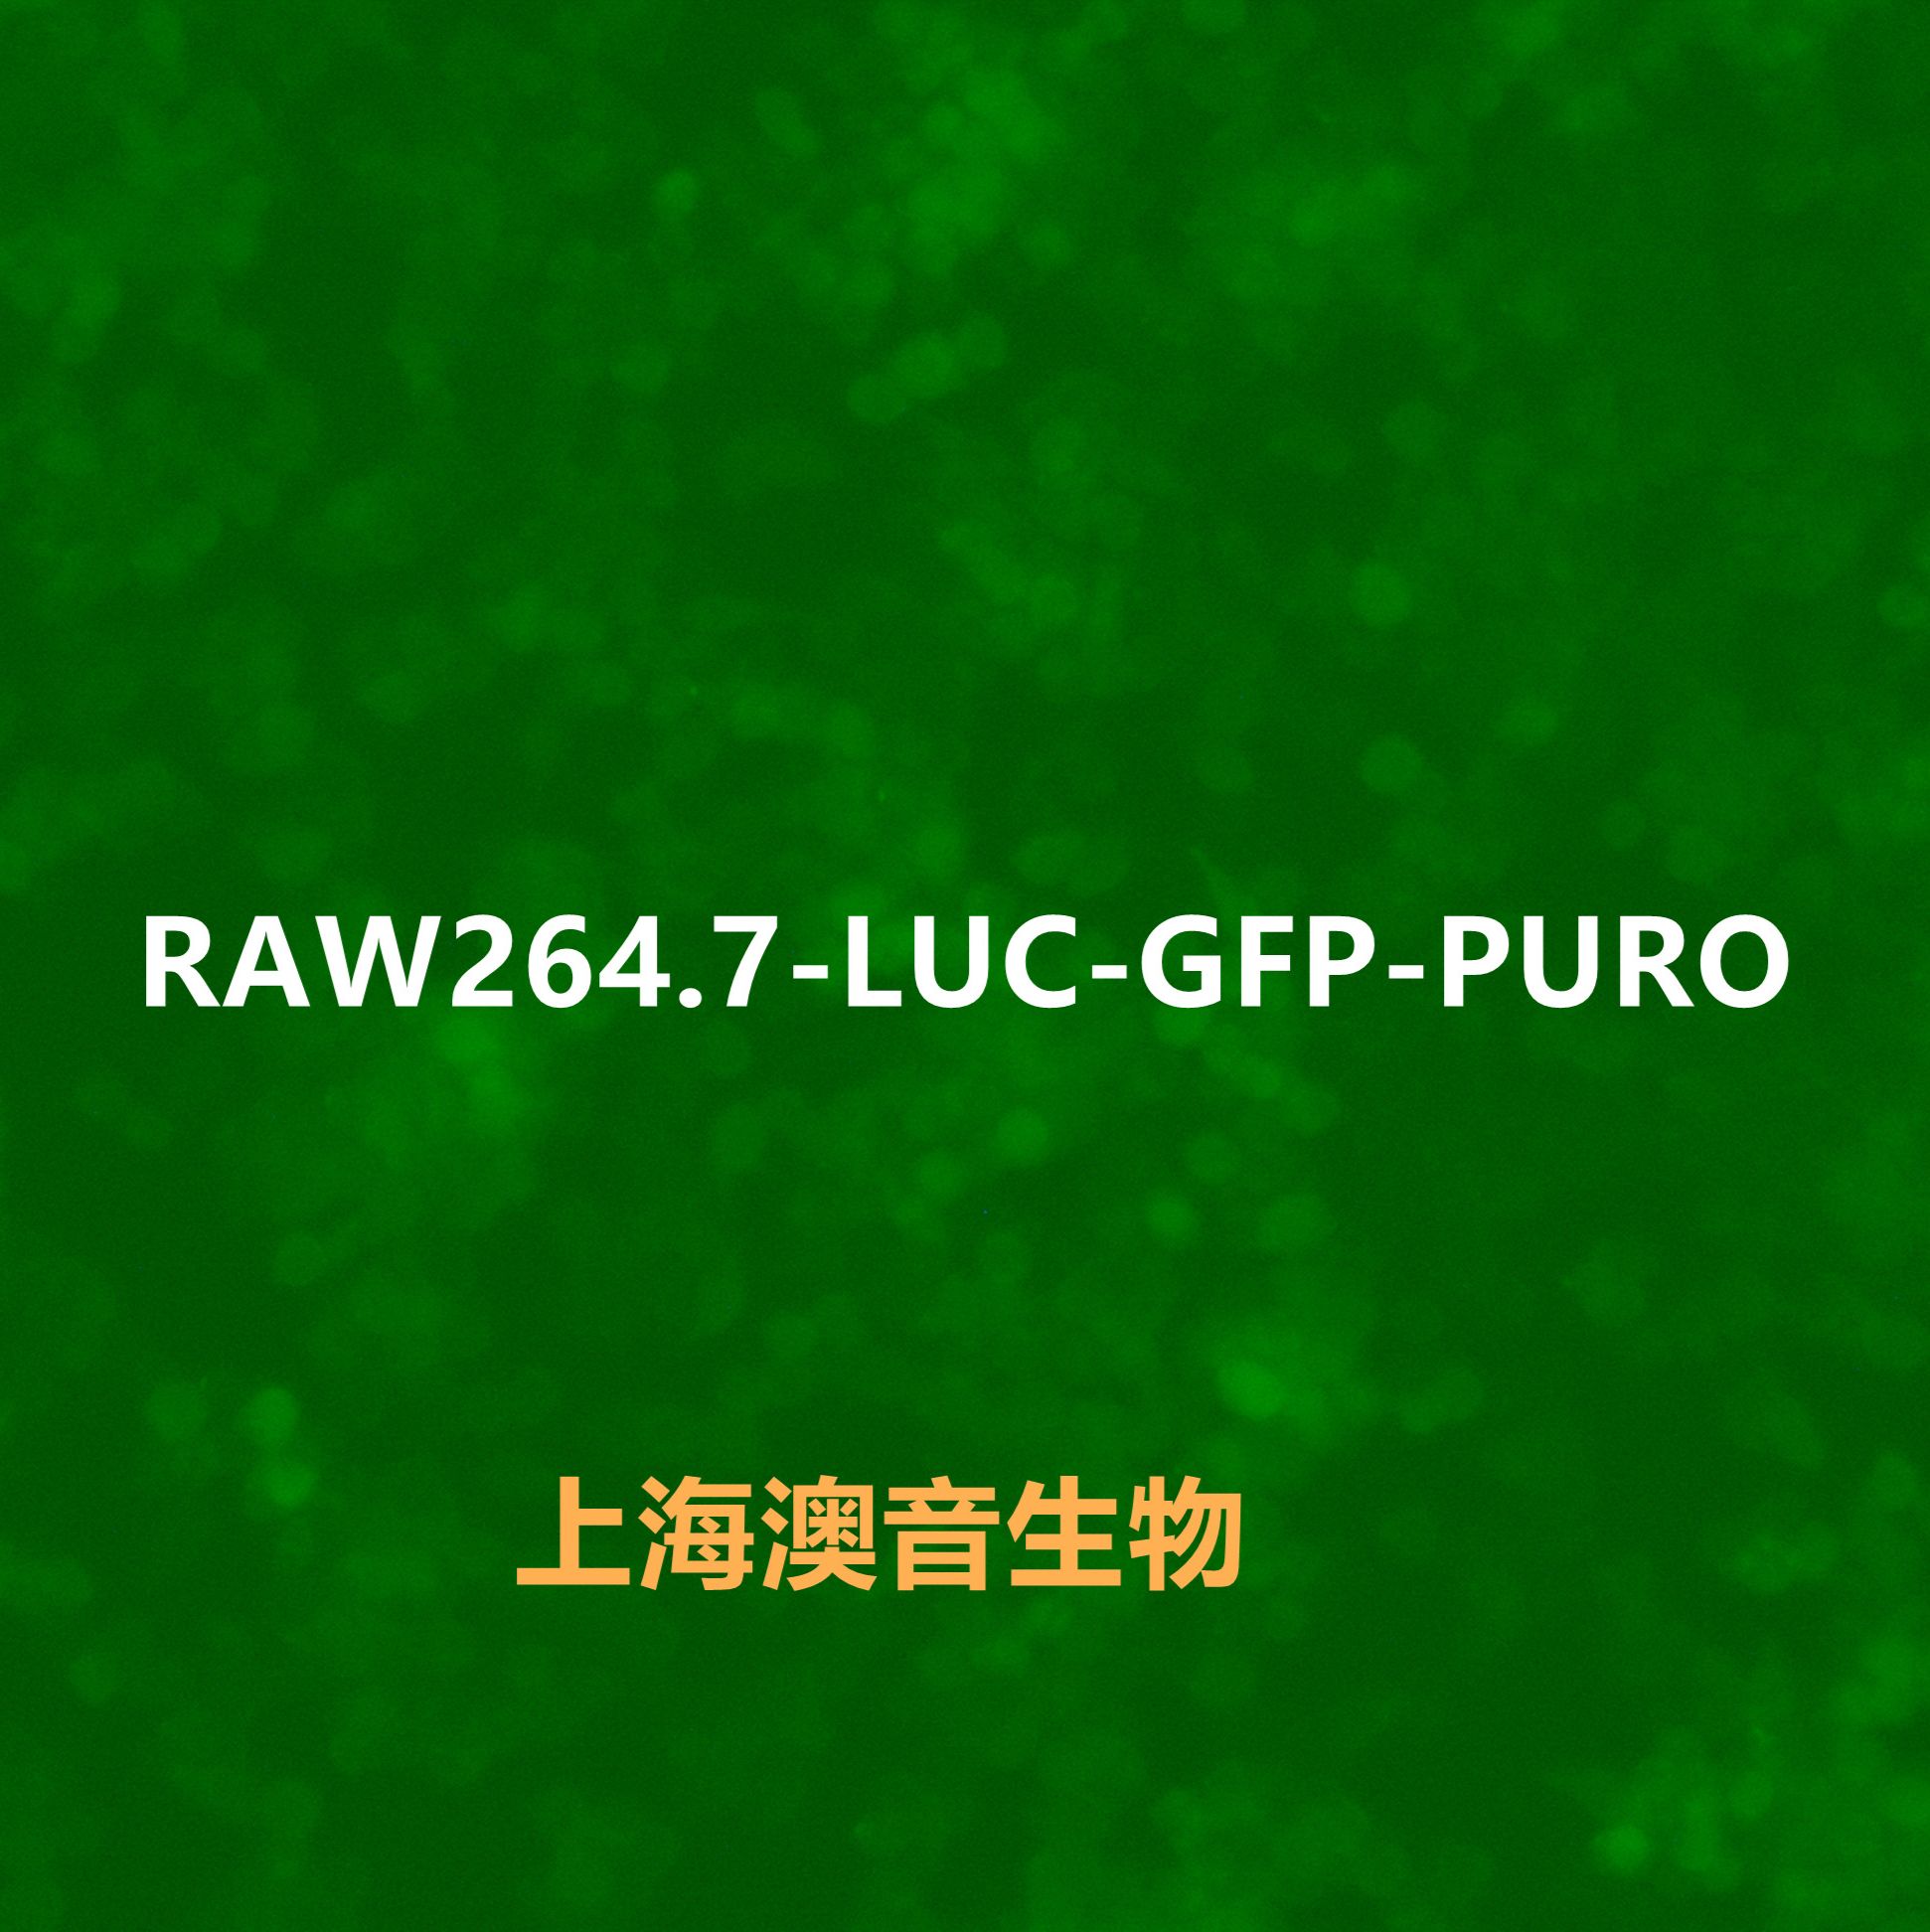 RAW 264.7-LUC-rFP-Puro【RAW264.7-LUC;RAW264.7-RFP;RAW 264.7-LUC;RAW 264.7-RFP】双标记的小鼠单核巨噬细胞白血病细胞